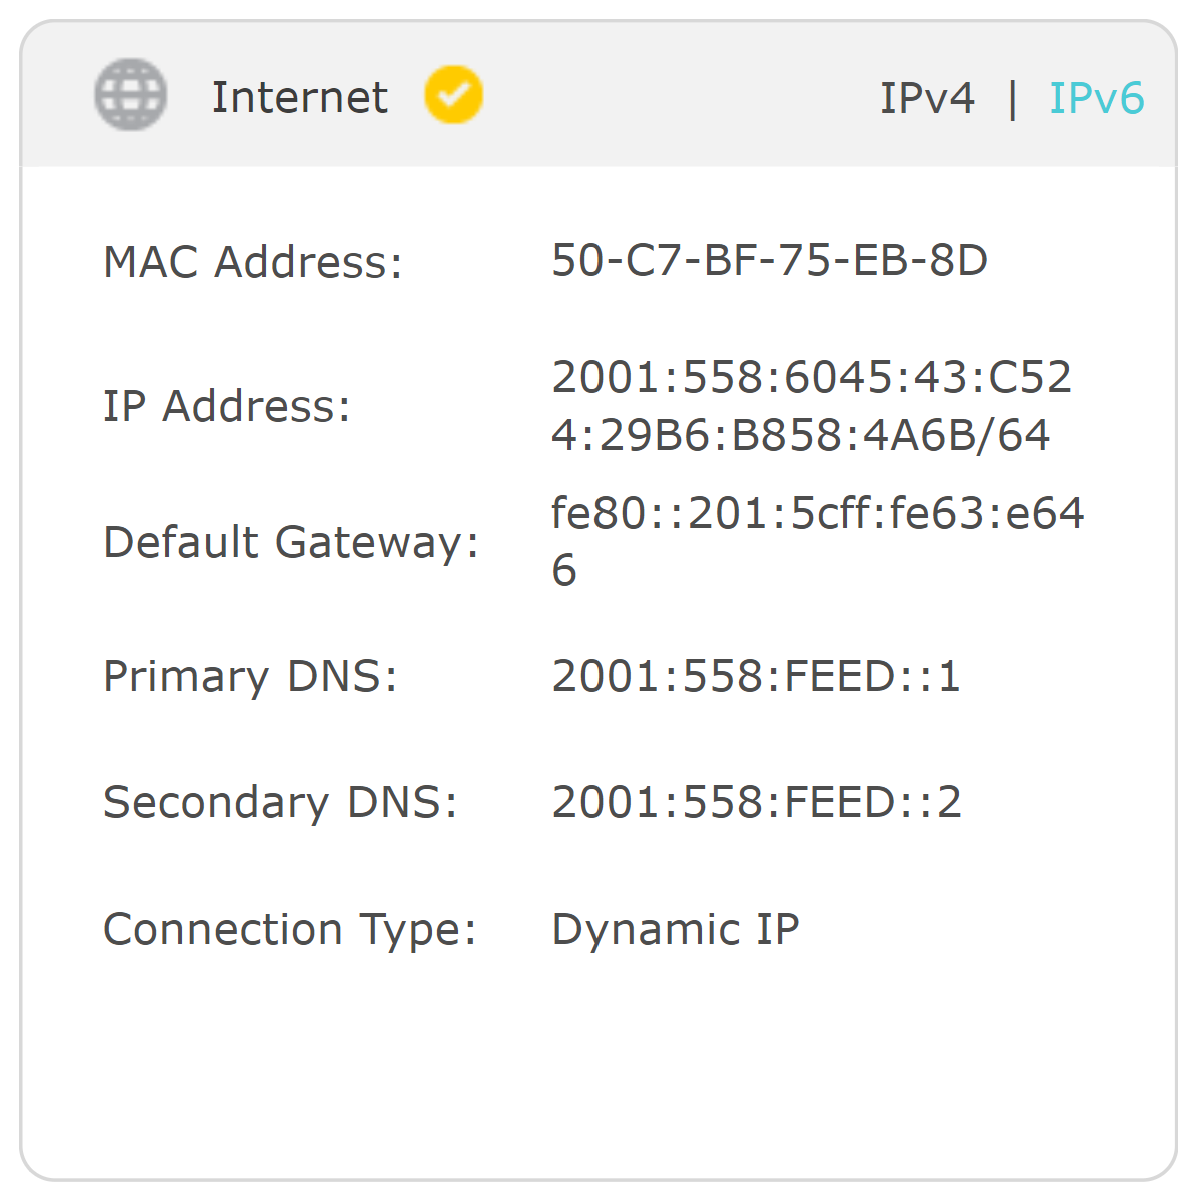 IPv6 no network access a99d6913-e2ad-4afa-a2cb-2dd150ff29a5?upload=true.png